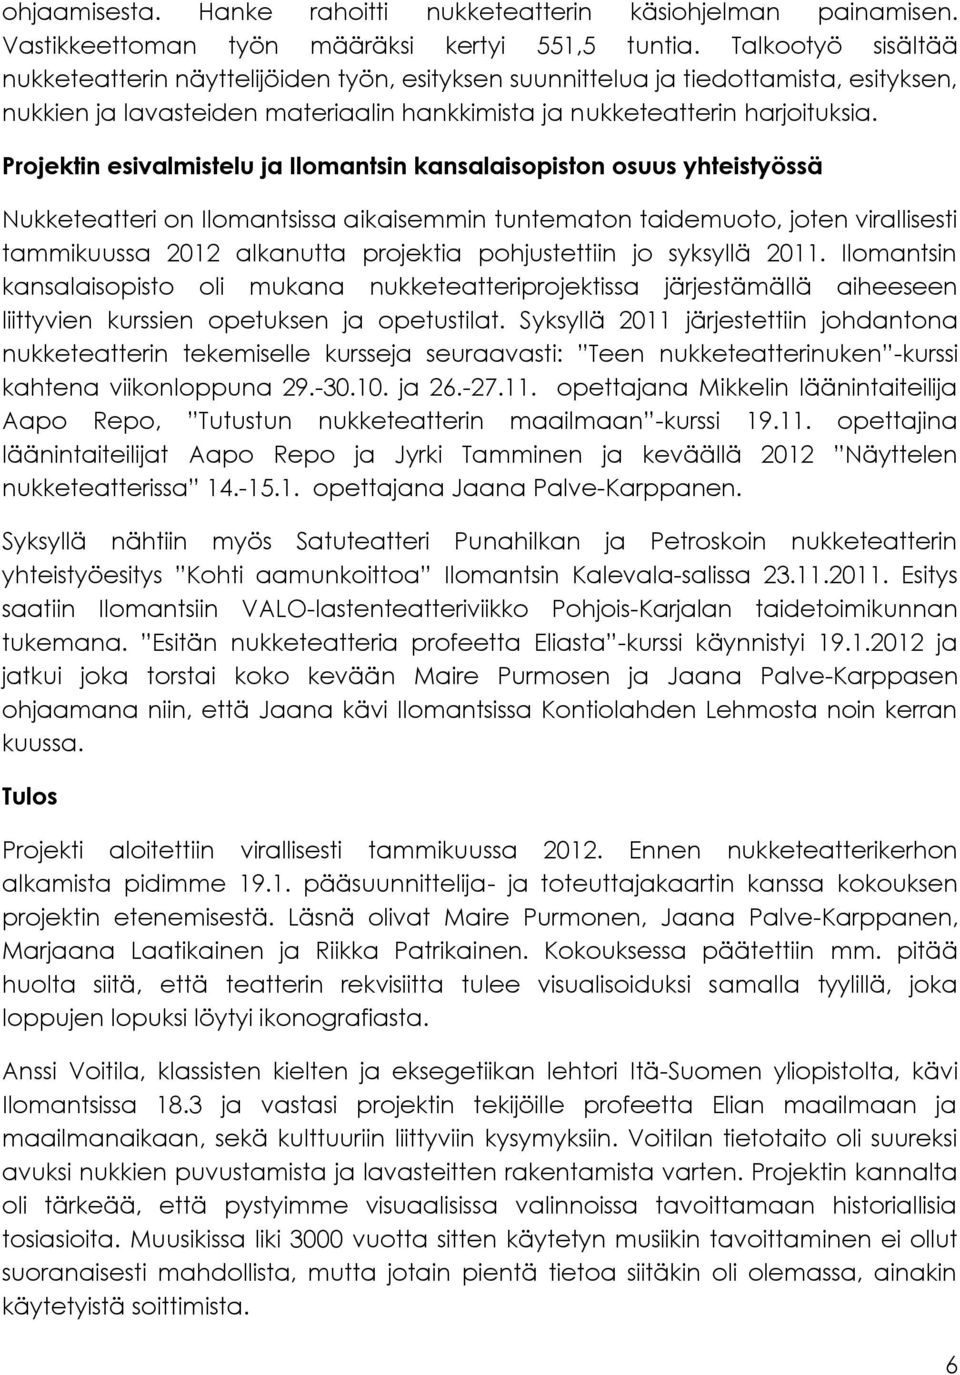 Projektin esivalmistelu ja Ilomantsin kansalaisopiston osuus yhteistyössä Nukketeatteri on Ilomantsissa aikaisemmin tuntematon taidemuoto, joten virallisesti tammikuussa 2012 alkanutta projektia